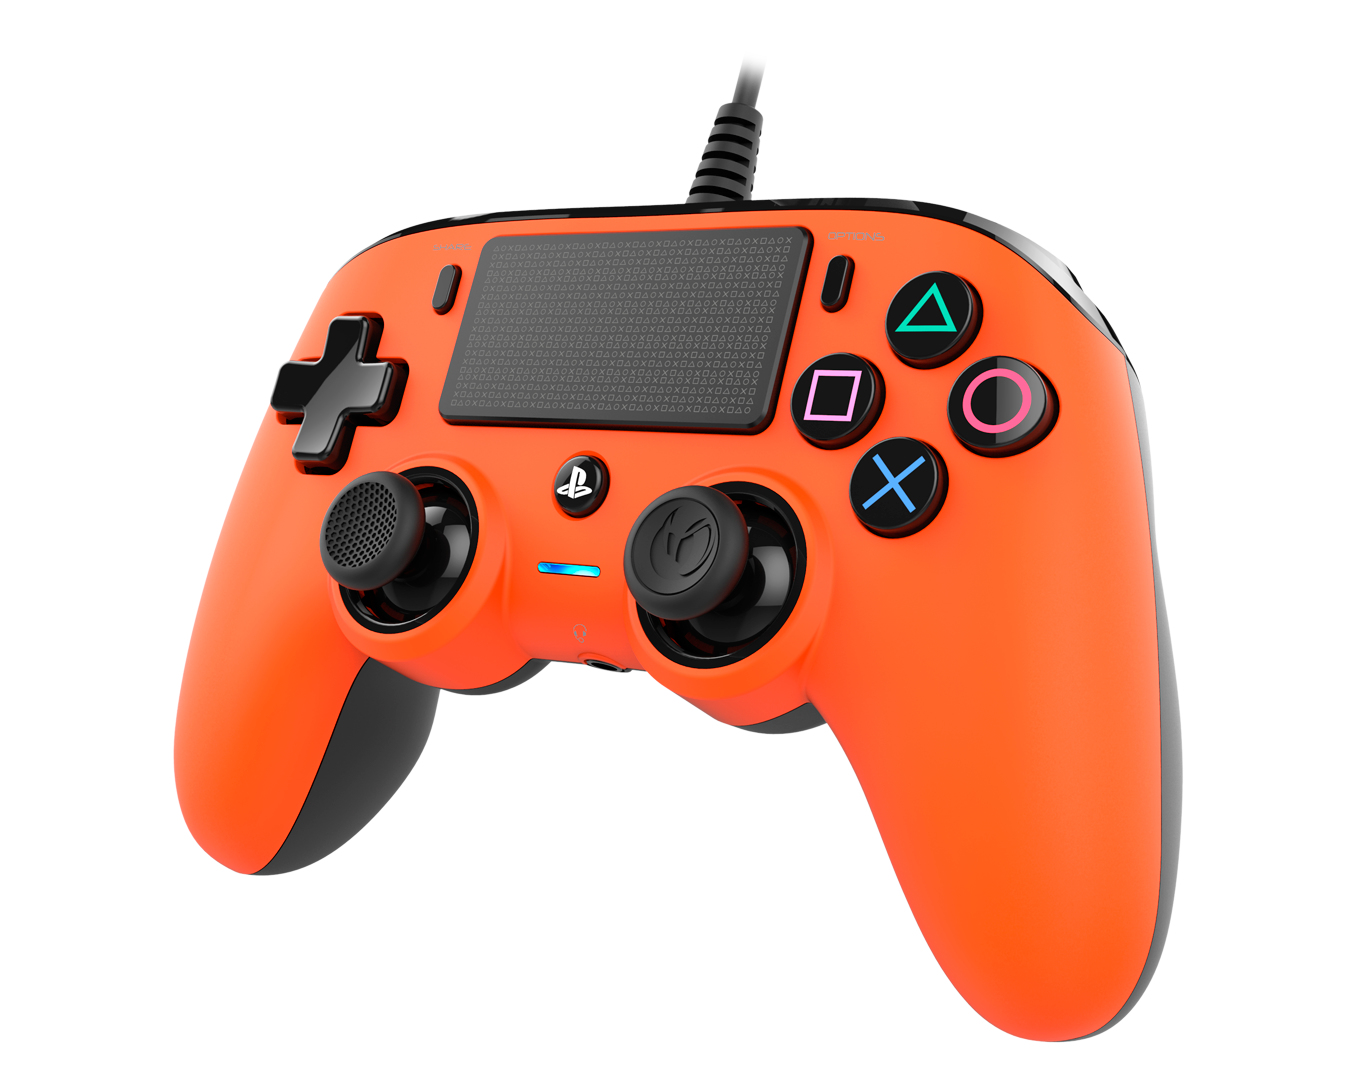 وحدة تحكم بالألعاب ناكون Ps4Ofcpadorange لأجهزة بلاي ستيشن 4 أنالوج/رقمية، لون برتقالي